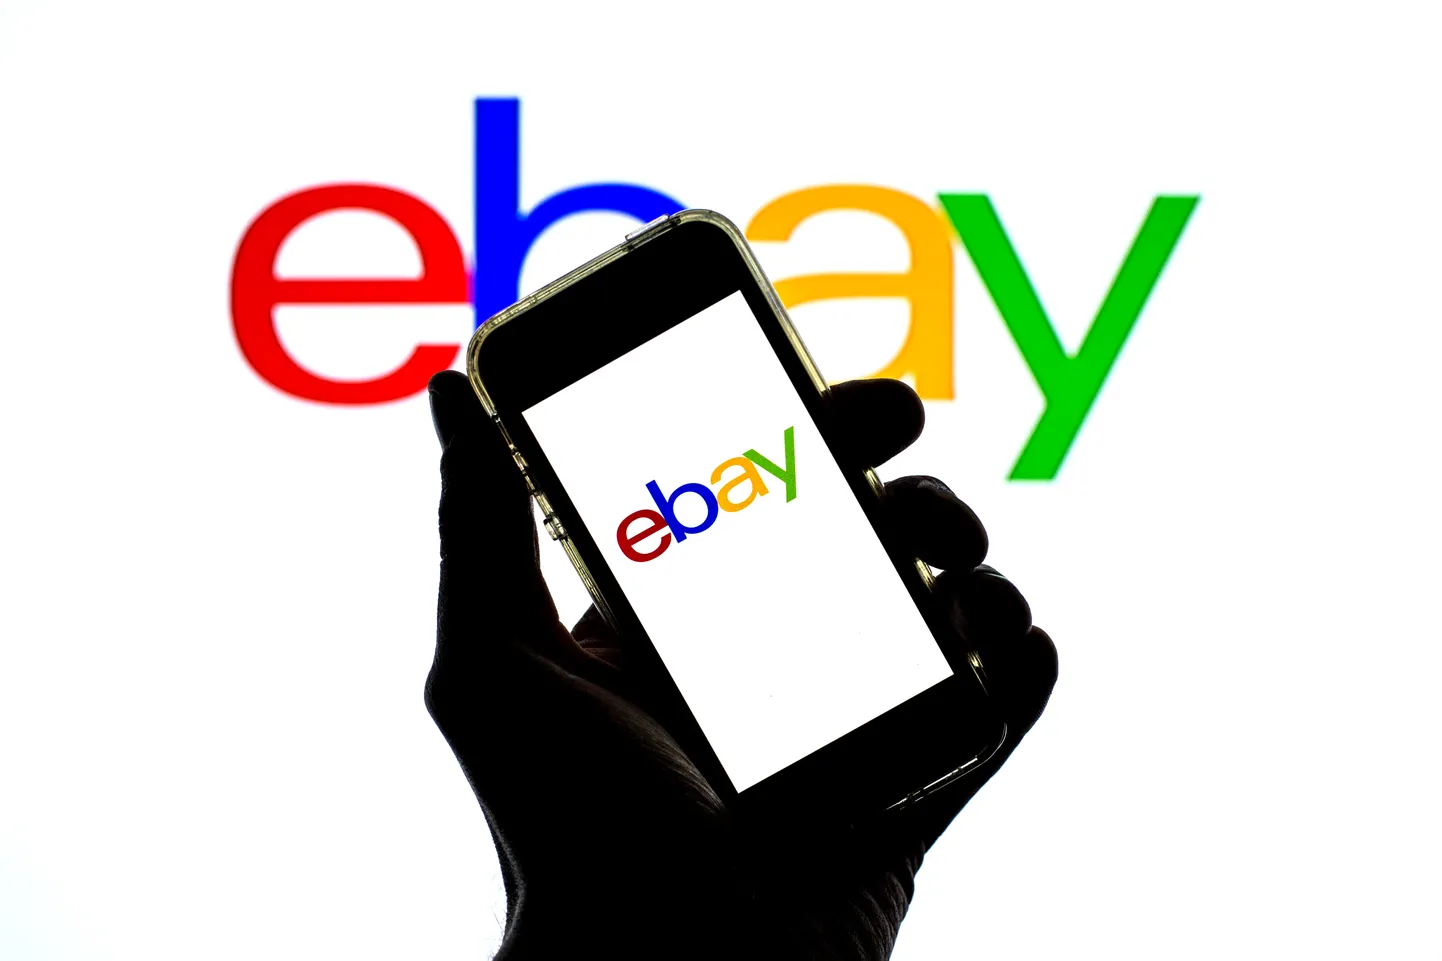 "ebay" logo